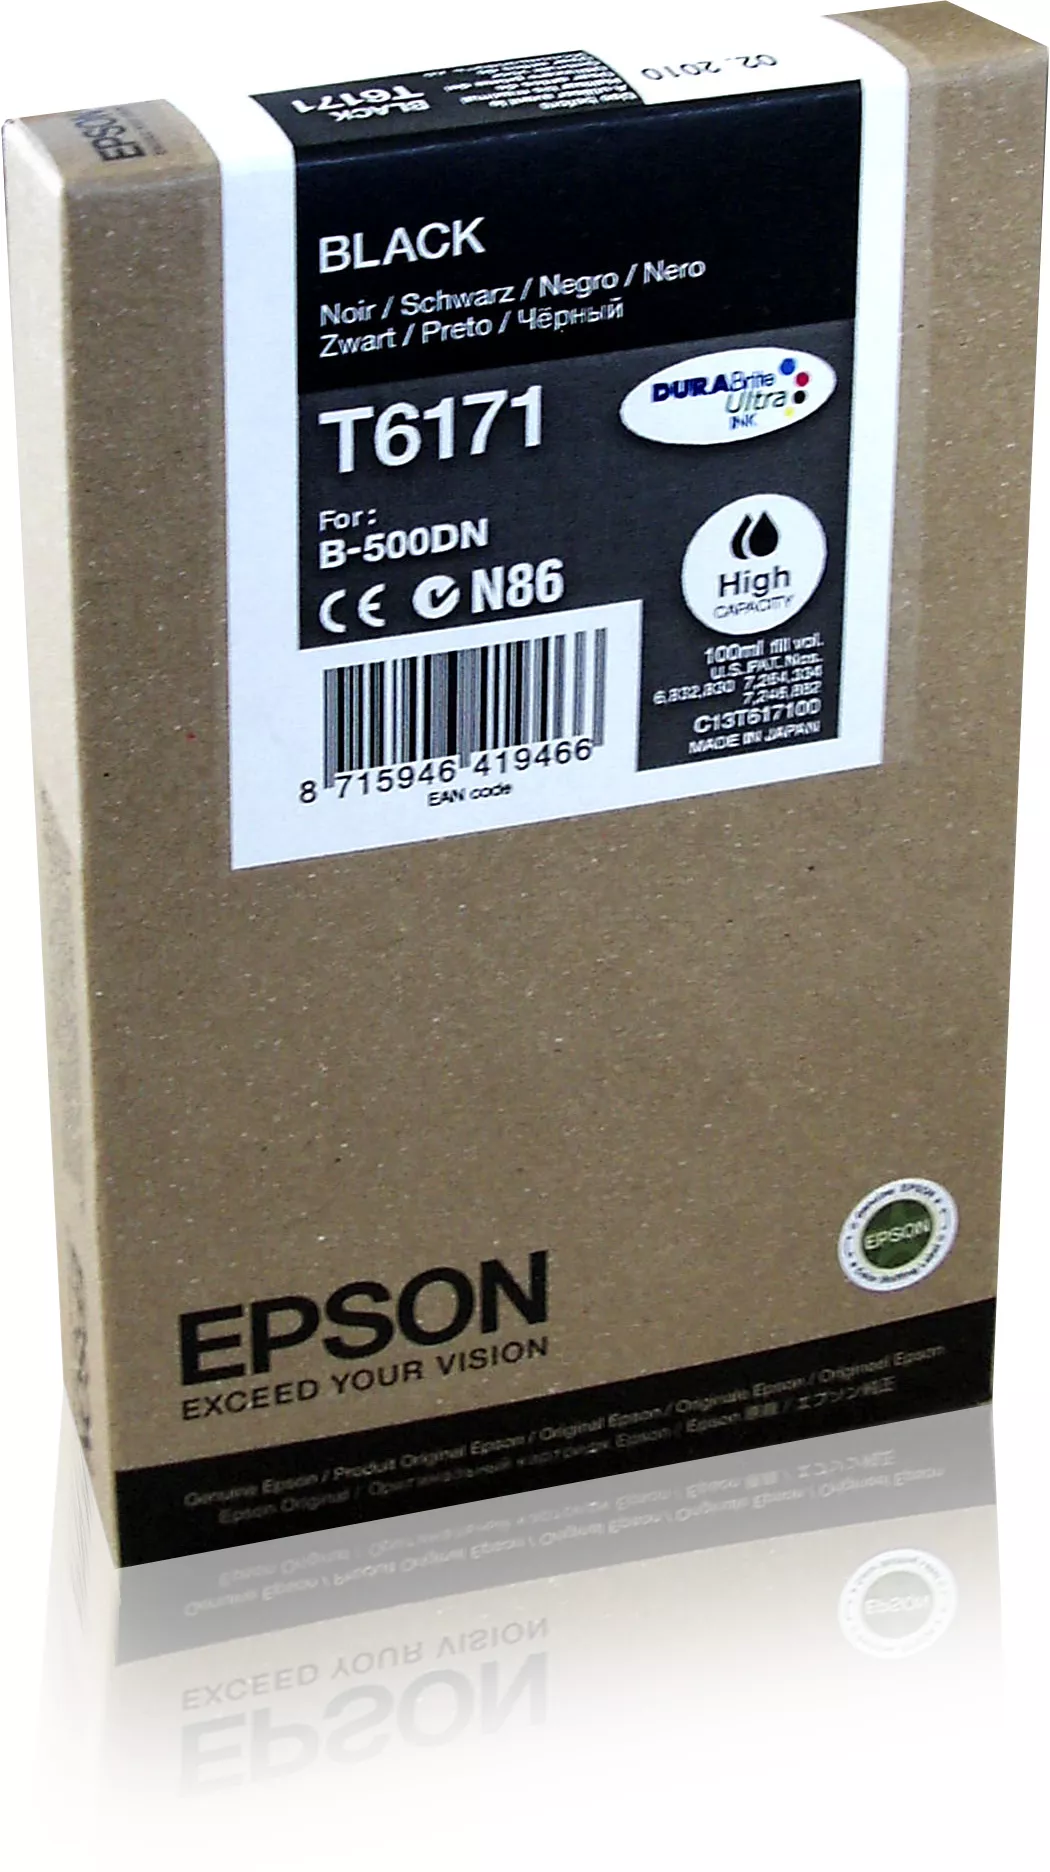 Achat EPSON T6171 cartouche de encre noir haute capacité 100ml - 8715946419466